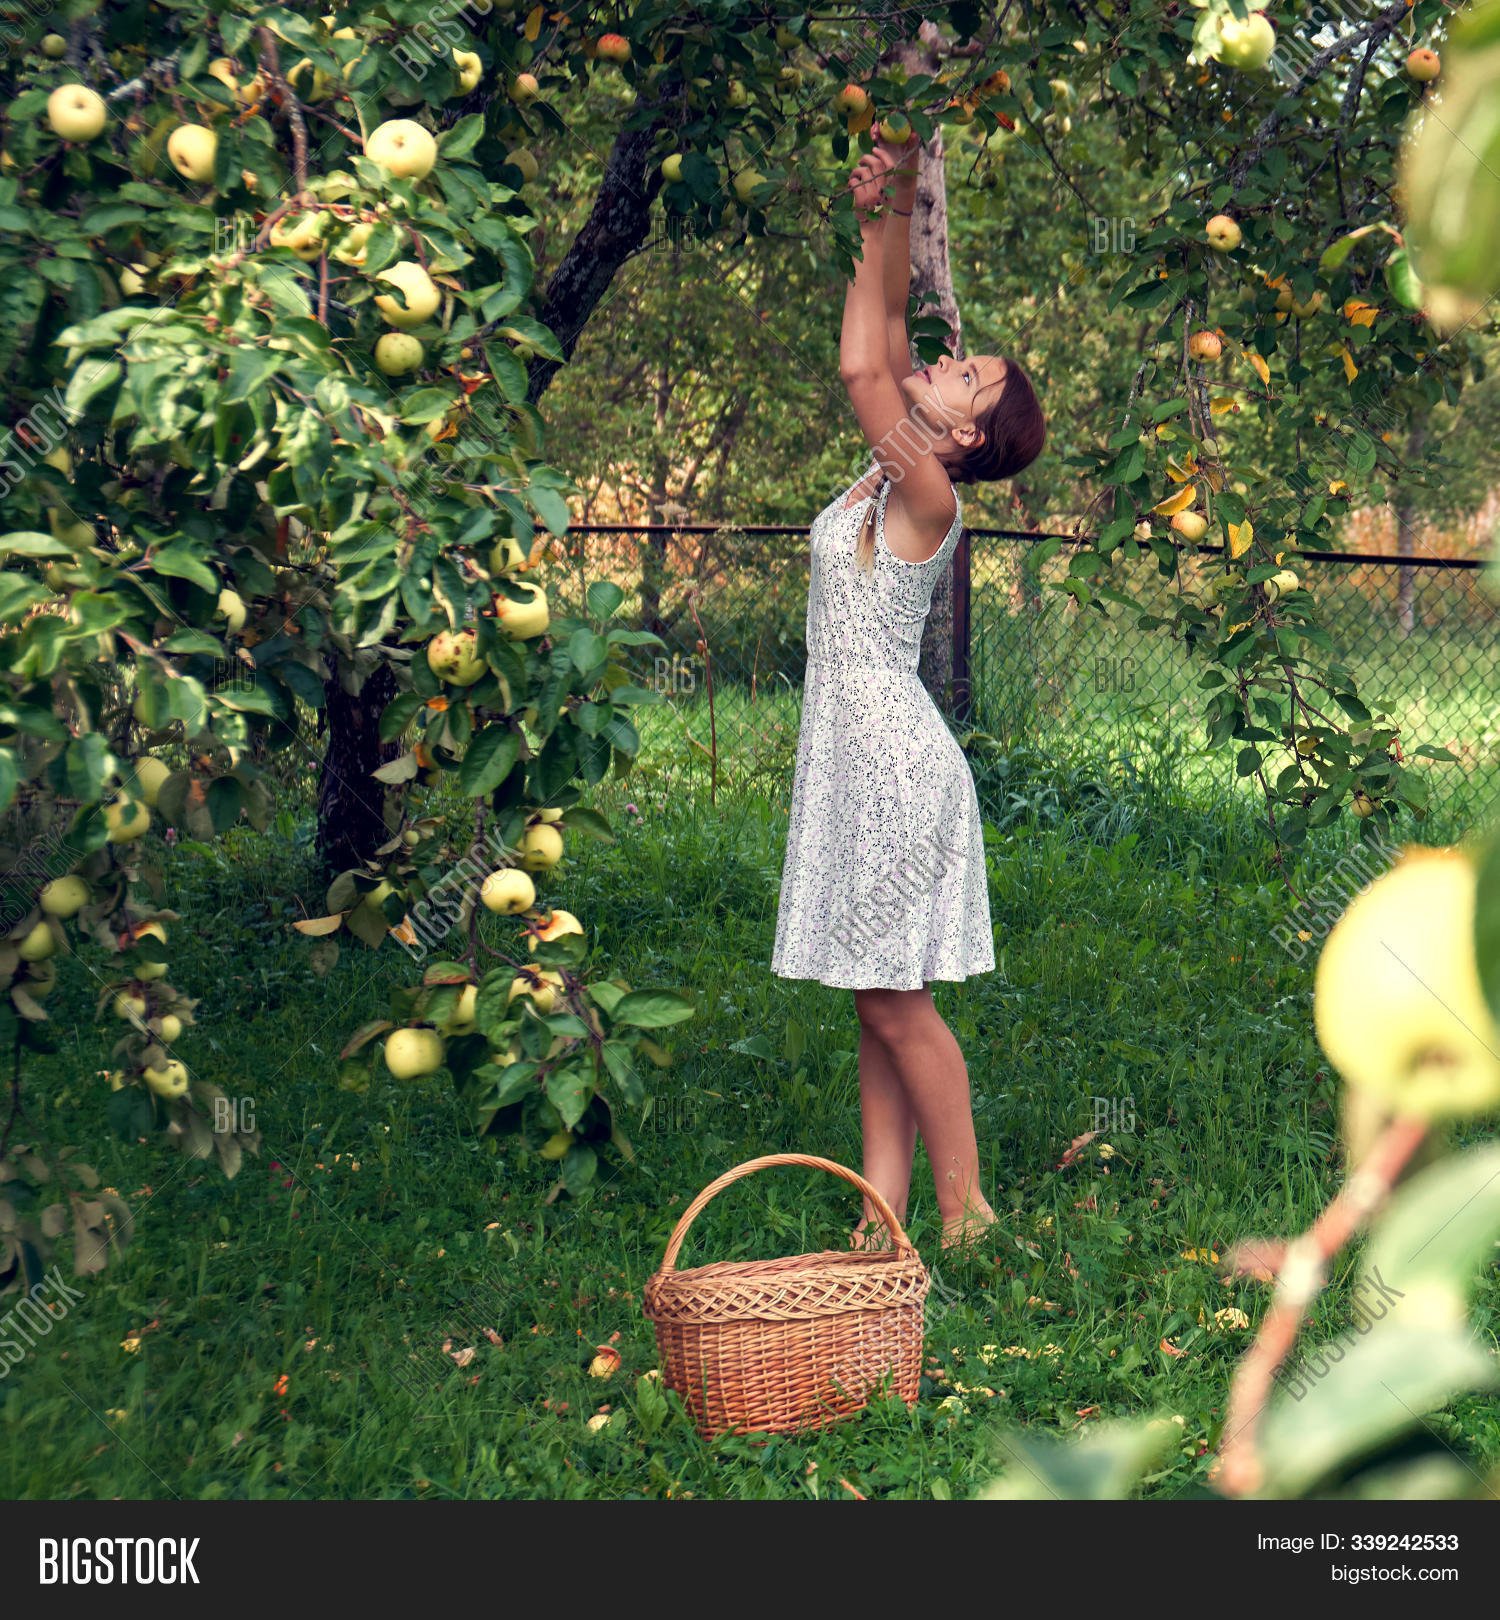 С яблони сорвать яблоко. Фотосессия с яблоками в саду. Девочка собирает яблоки. Женщина в яблоневом саду собирает яблоки. Срывает яблоко.